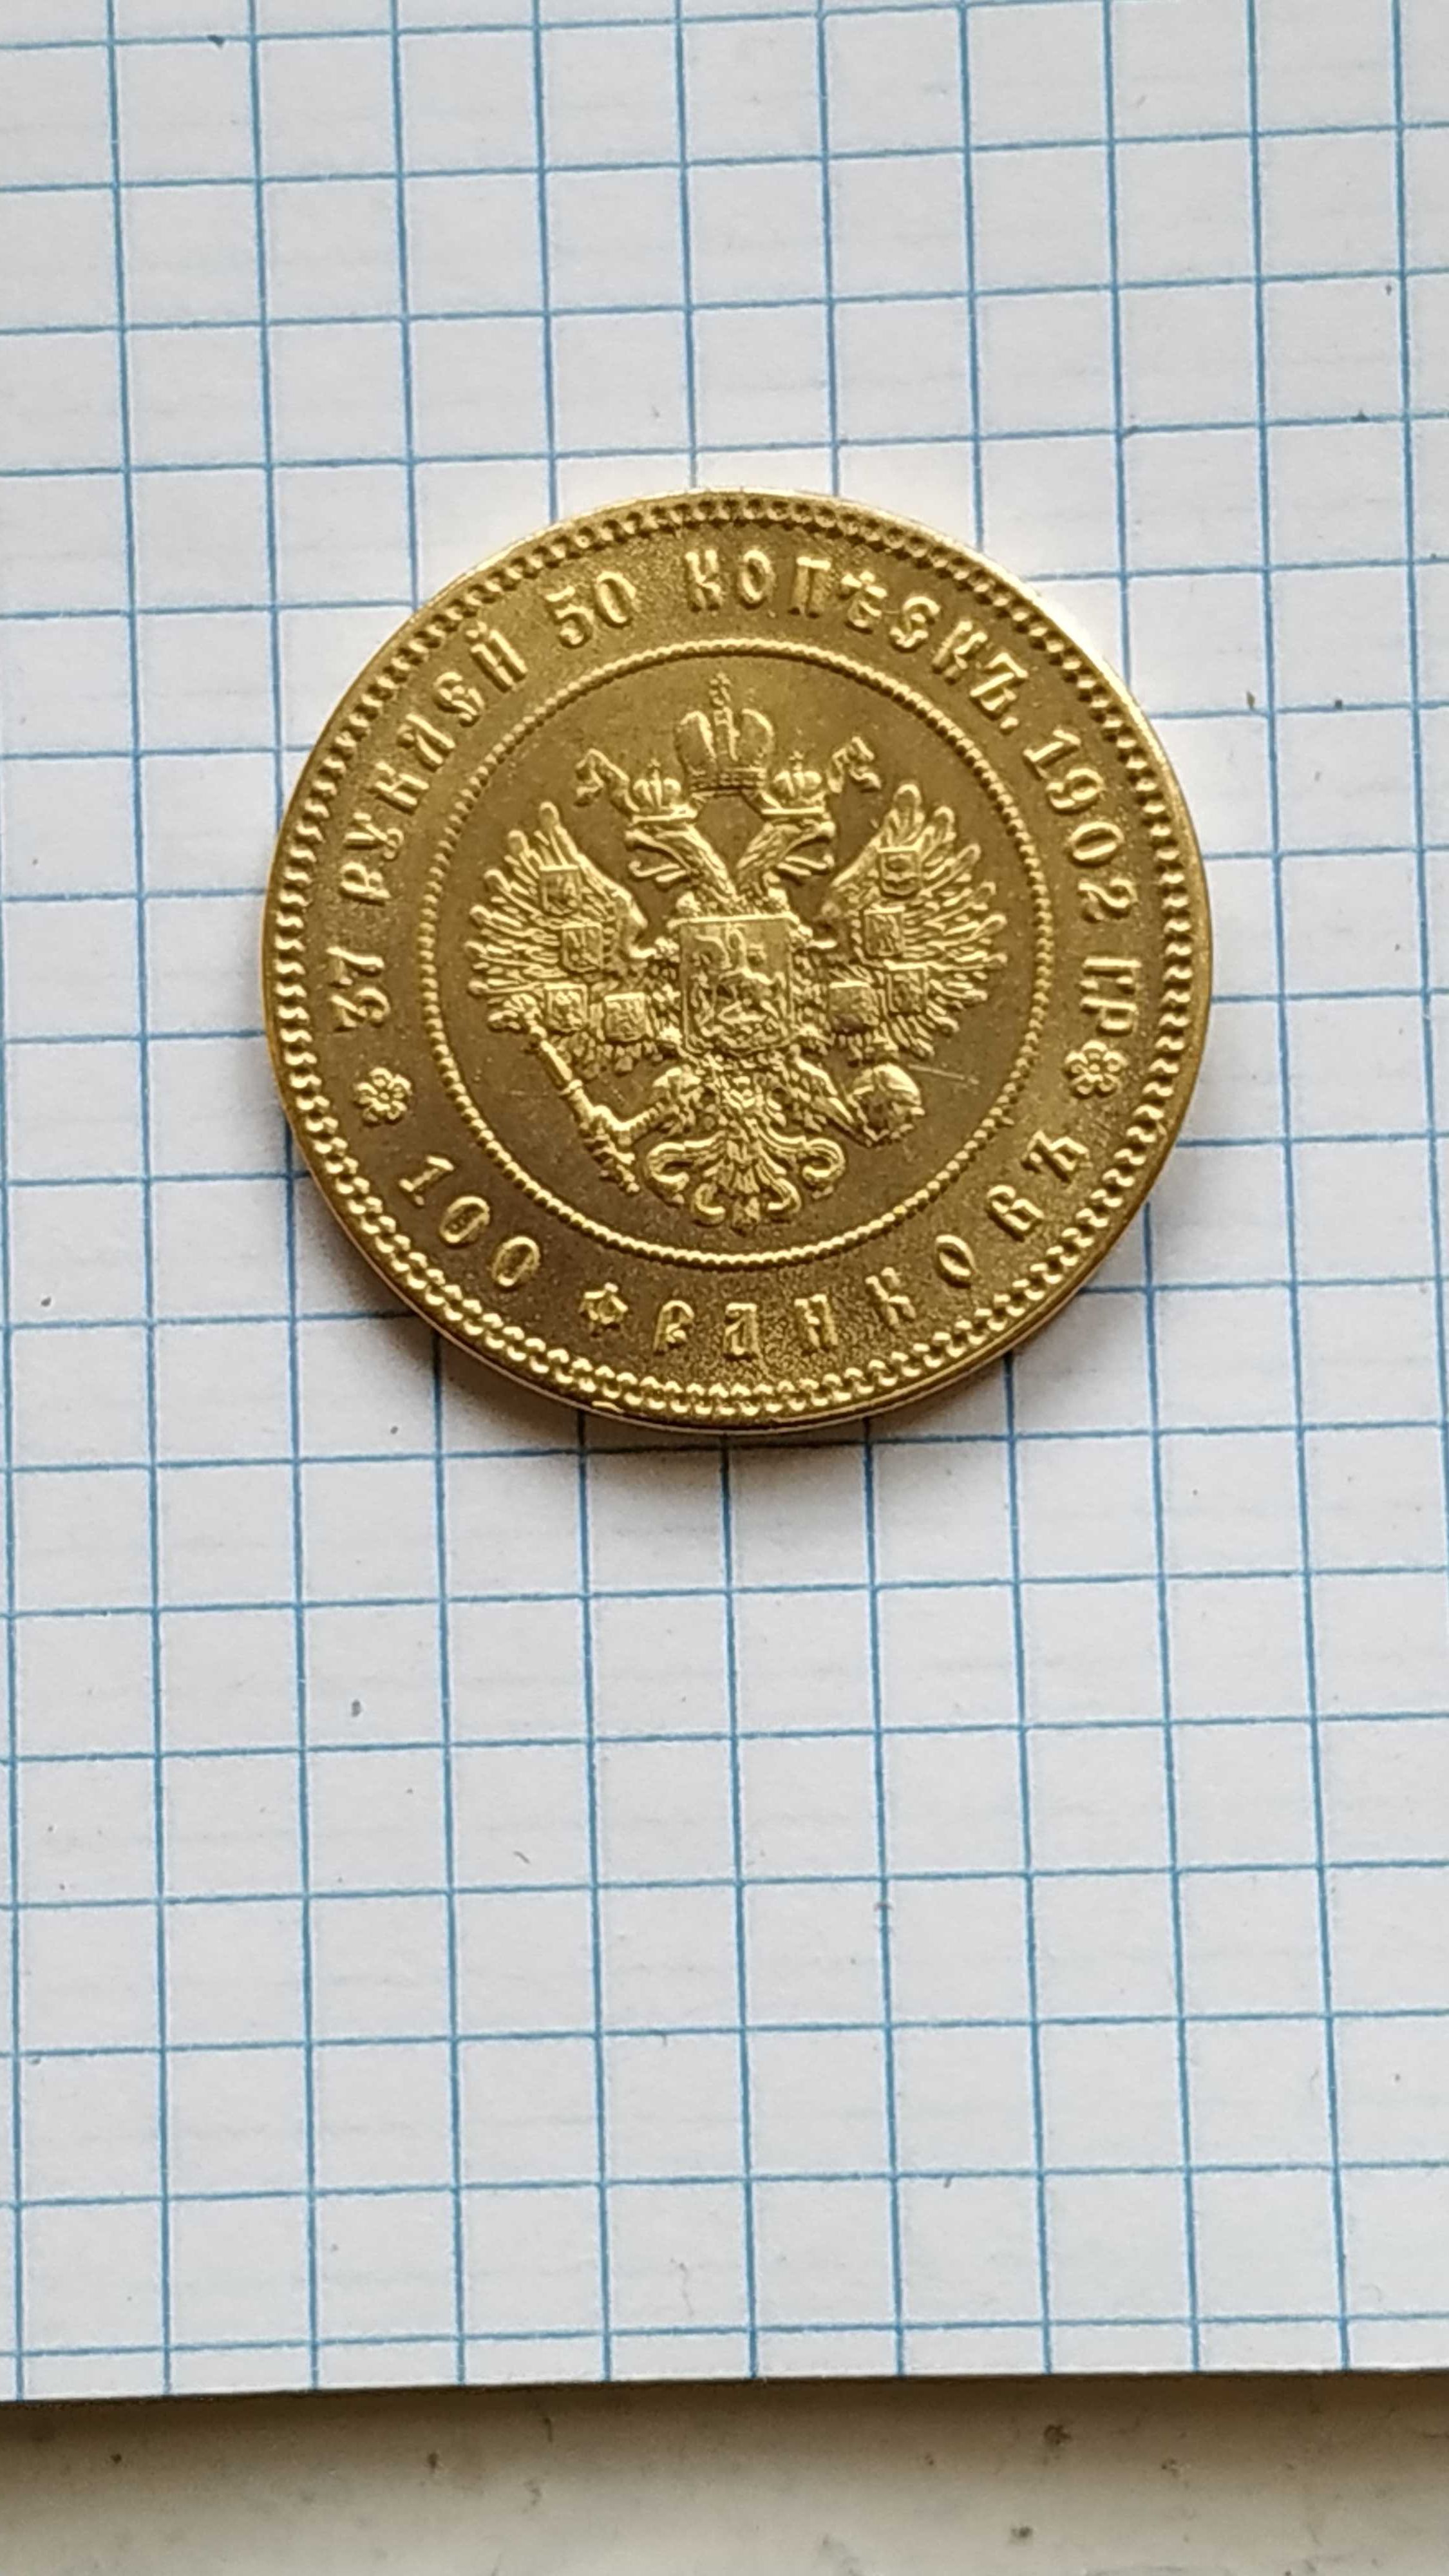 37.5 рублей Николая 2, редкая монета сувенир